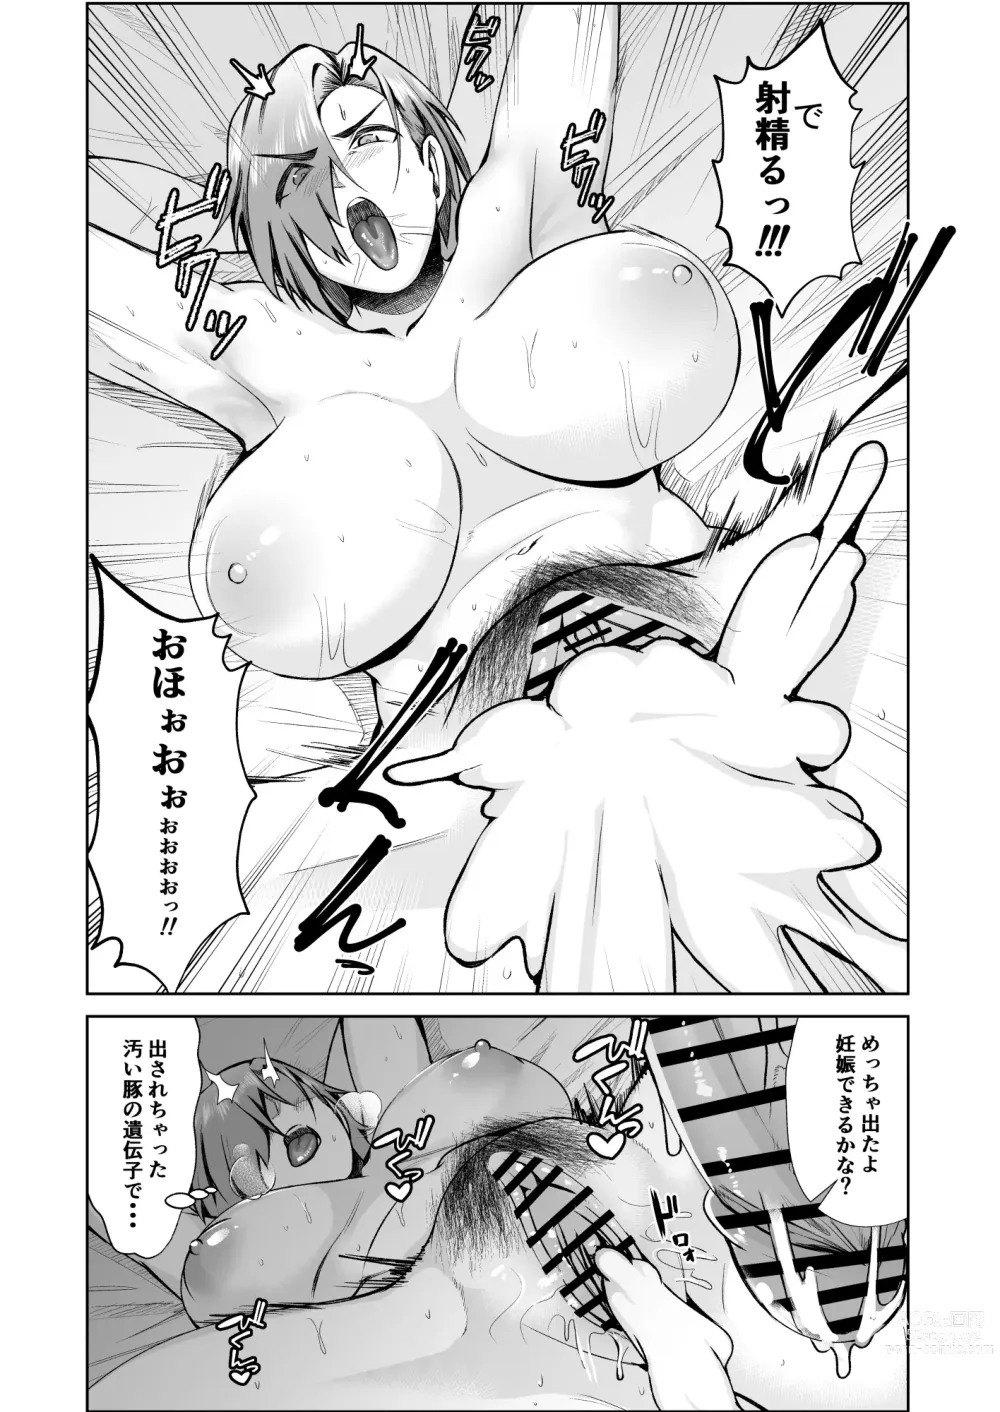 Page 23 of doujinshi Ojisanga shakinwo tsumano karadade hotenshitehoshiito iwaretanode kaidakushita hanashi